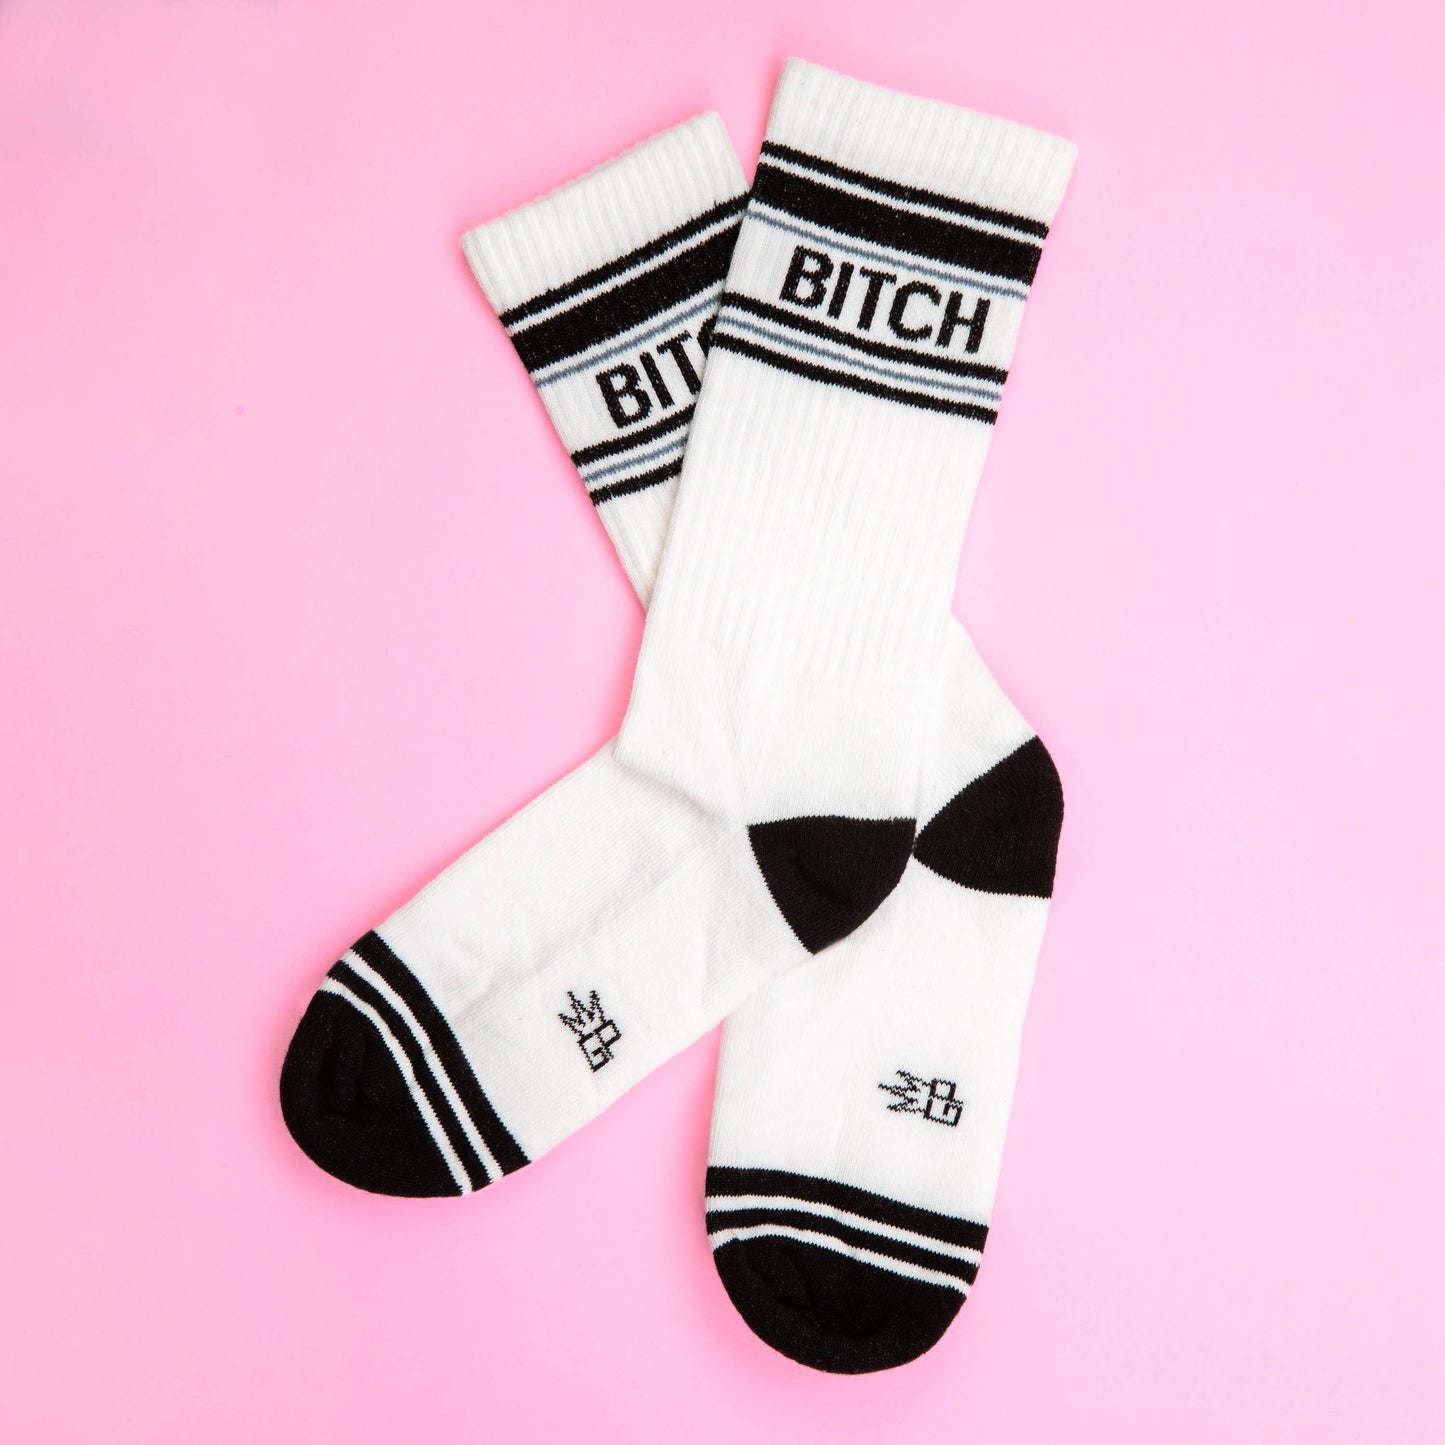 Bitch Gym Crew Socks